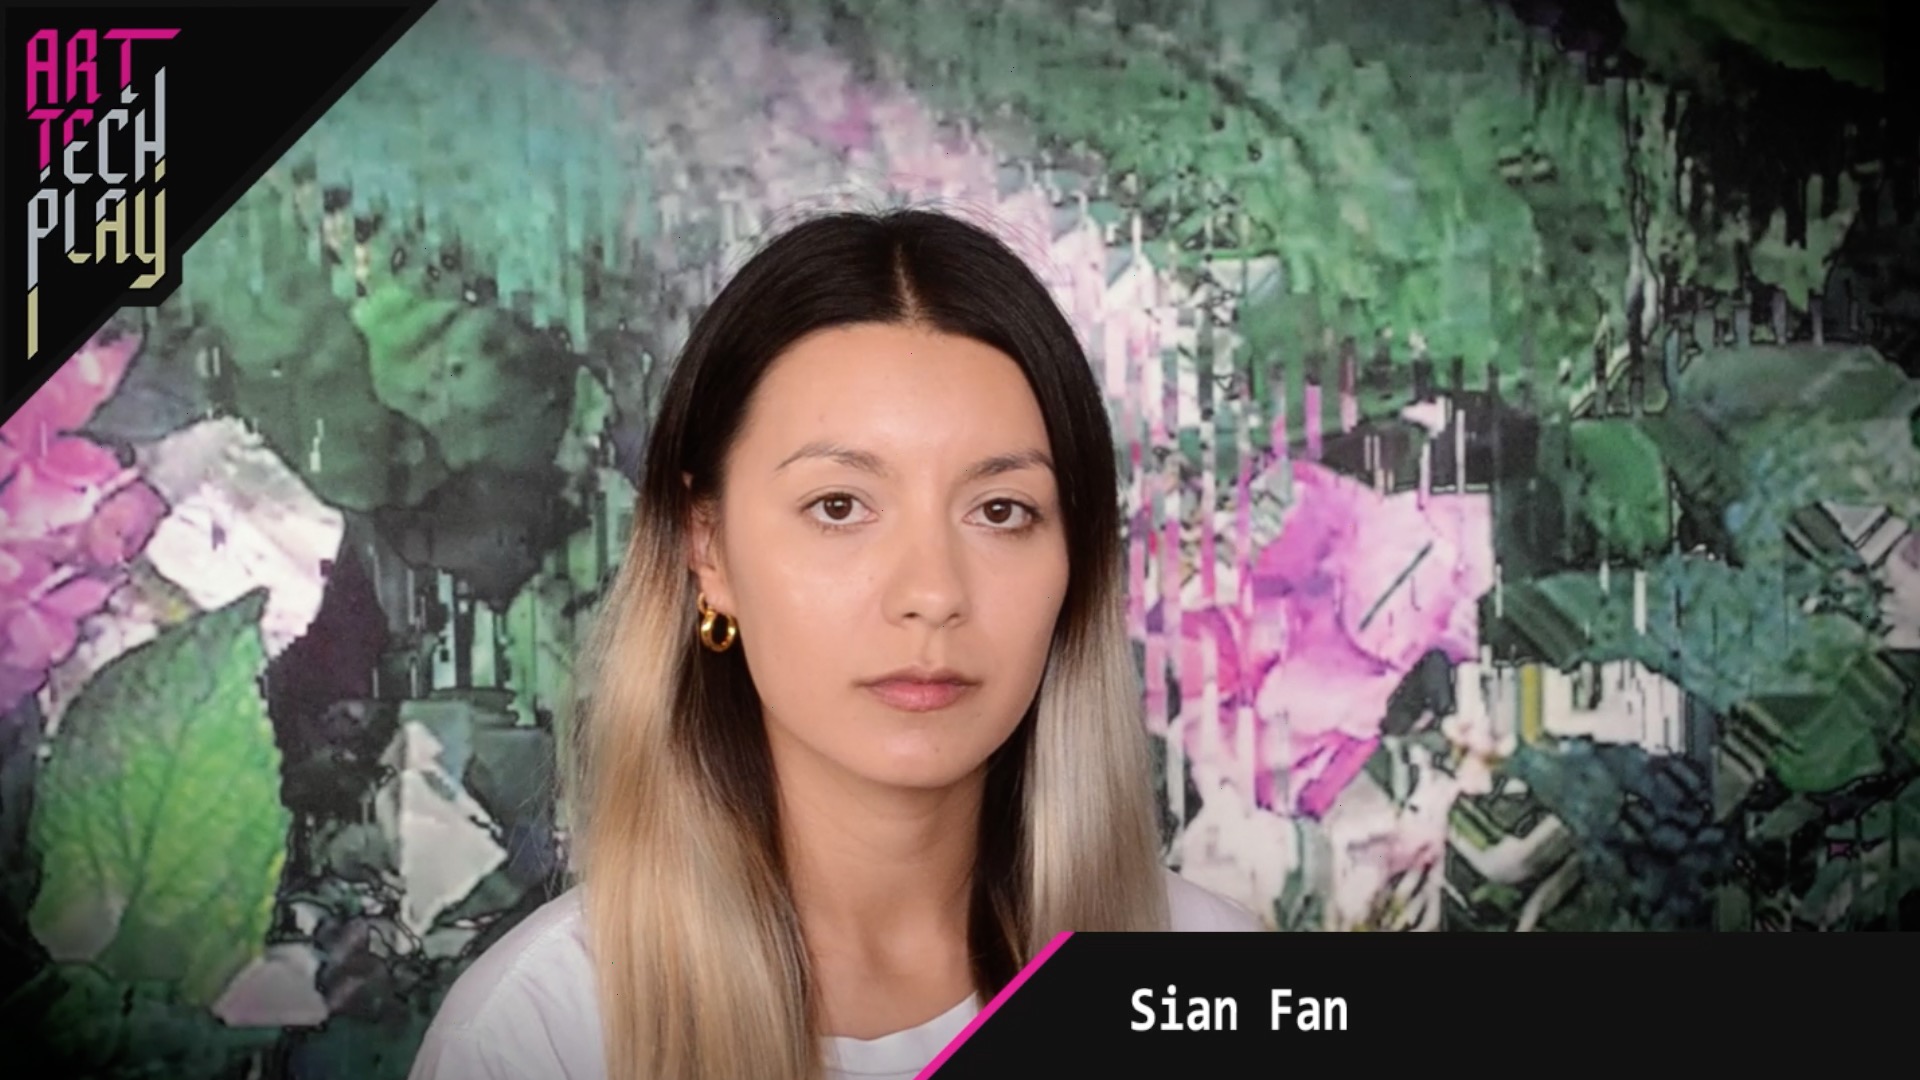 Sian Fan on mixing realities